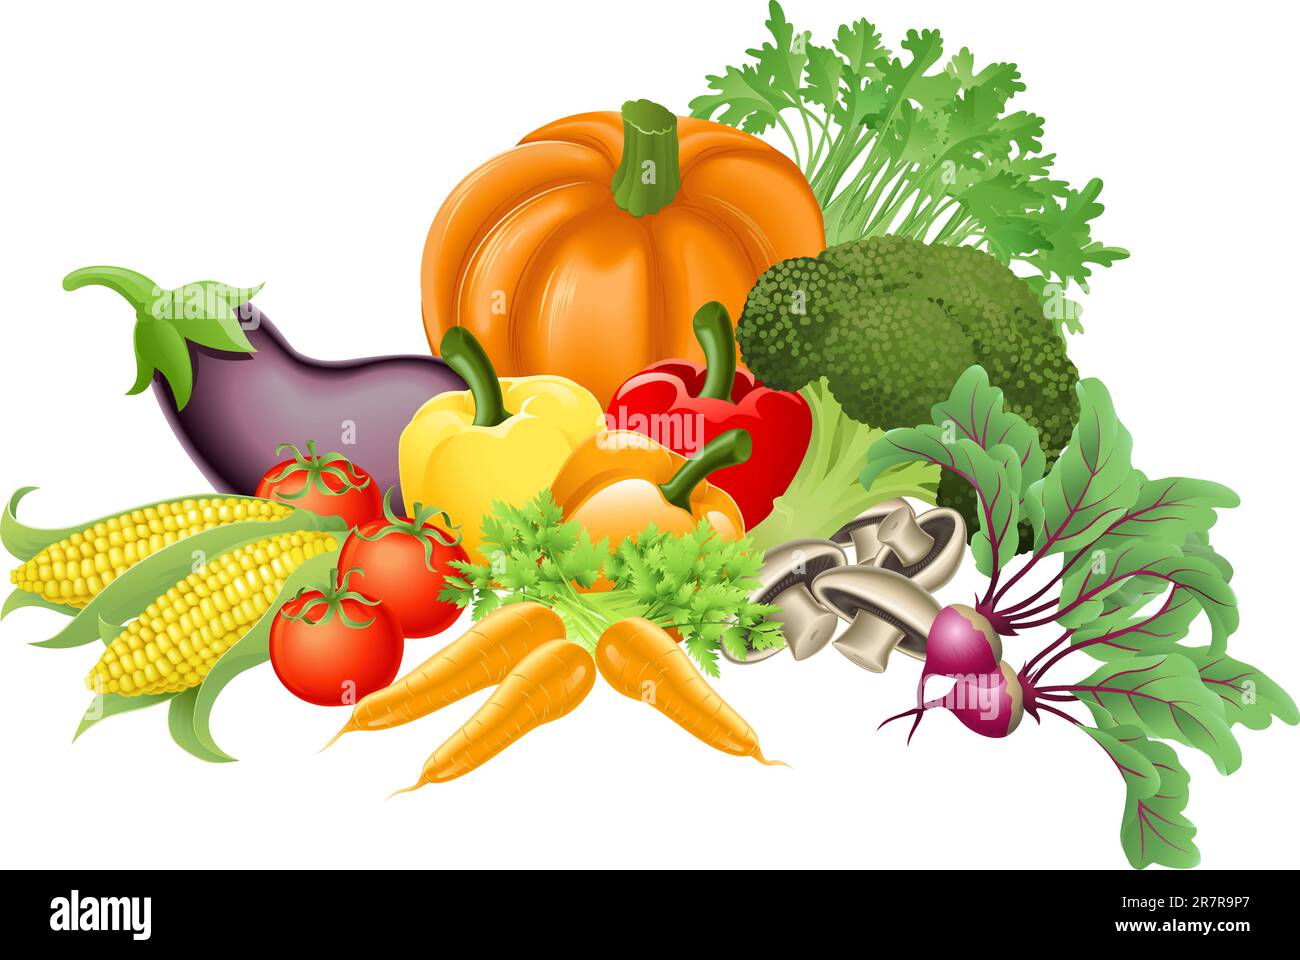 Illustration of an assortment of fresh tasty vegetables Stock Vector